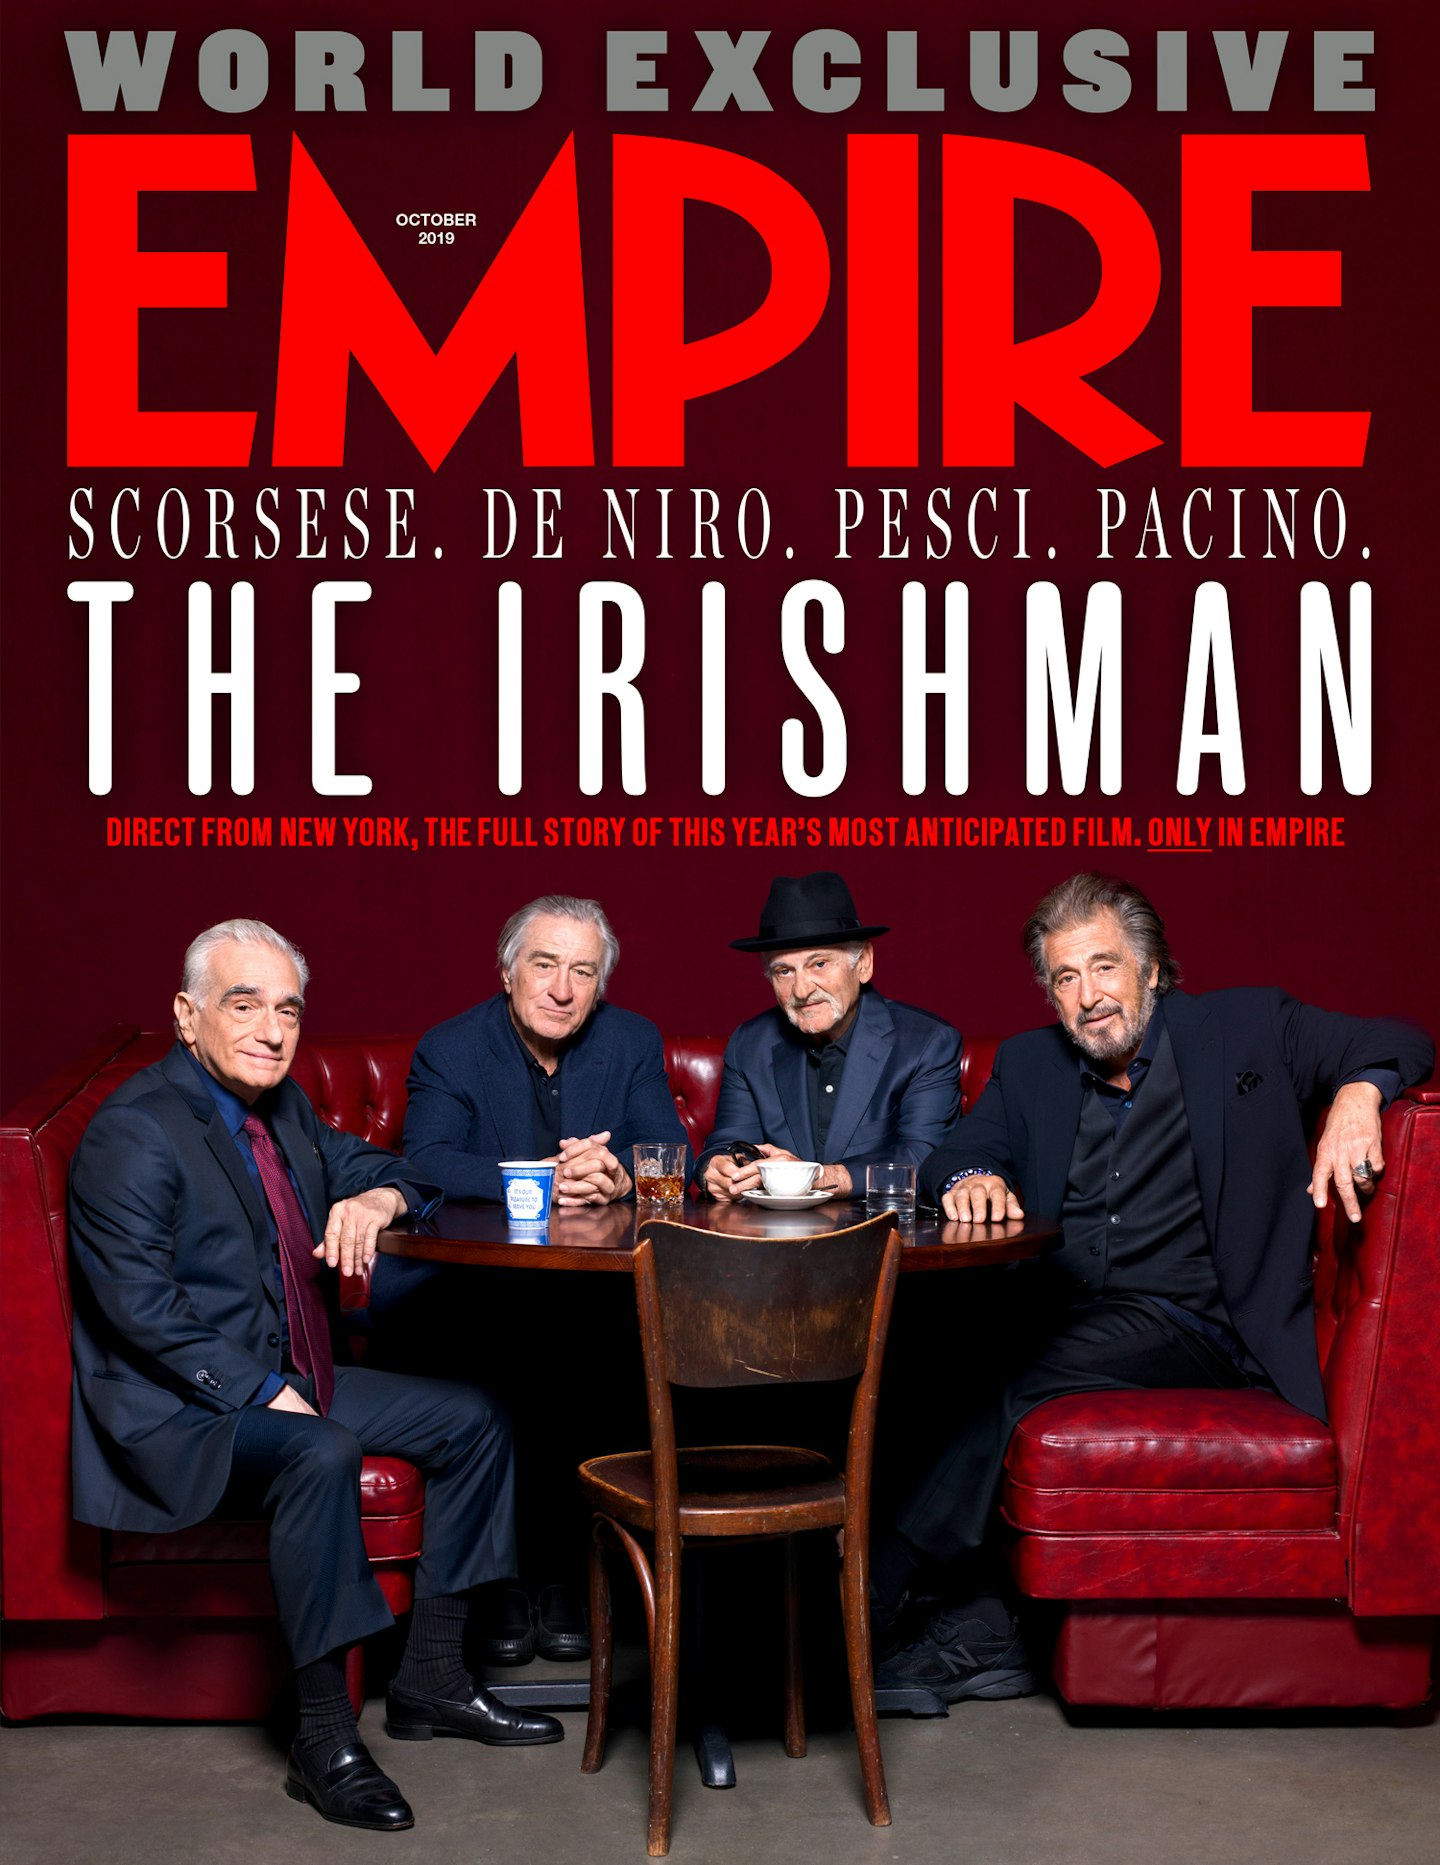 Empire – October 2019 – The Irishman cover